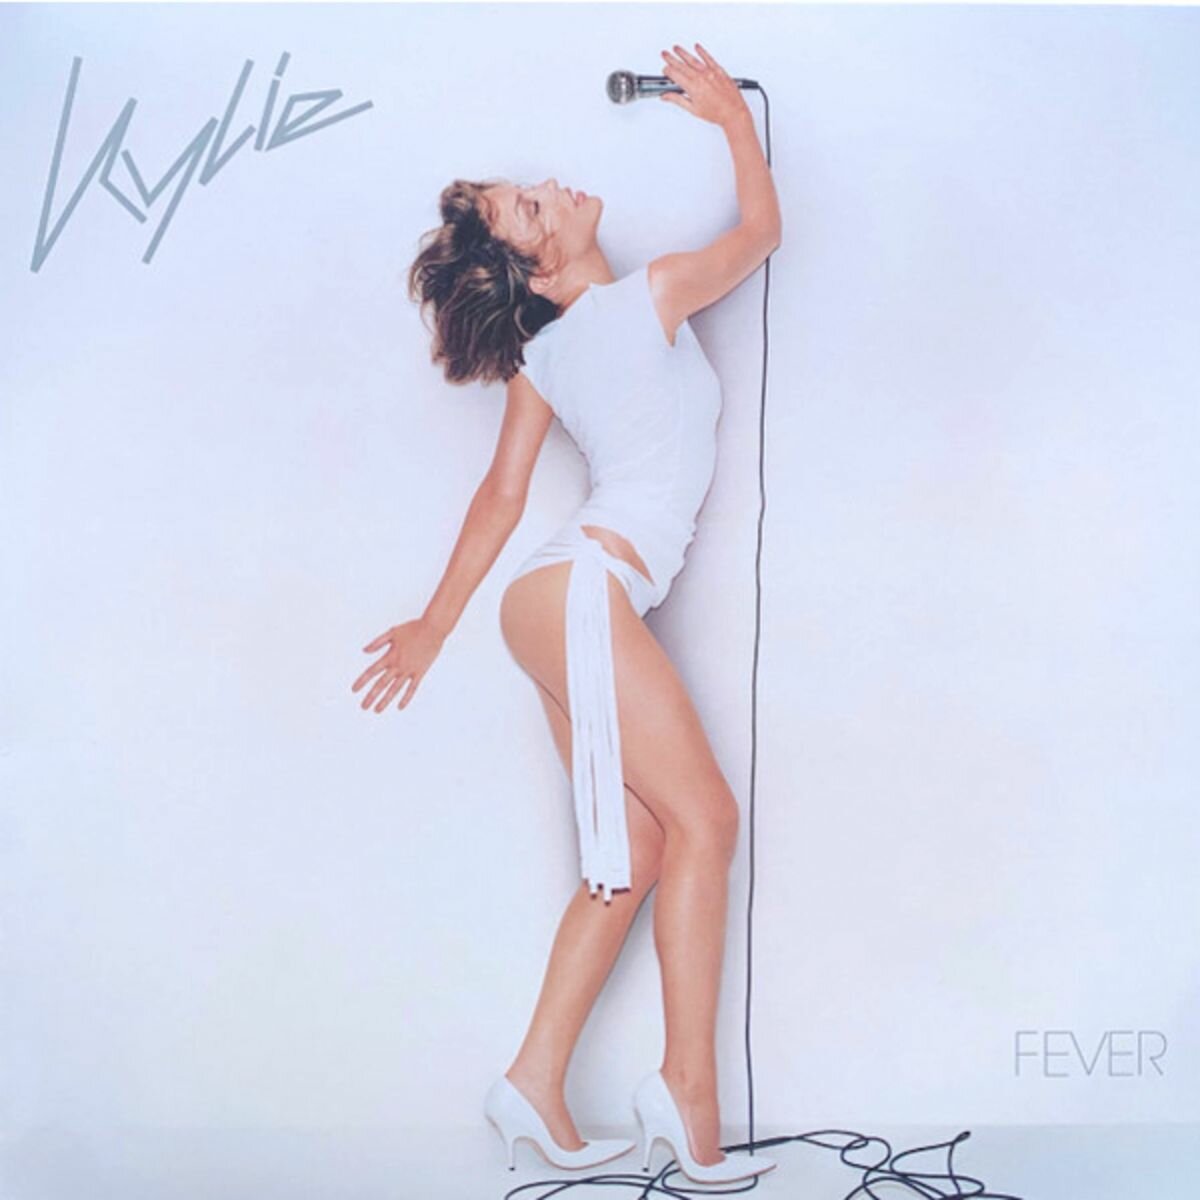 Виниловая пластинка Kylie Minogue "Fever"